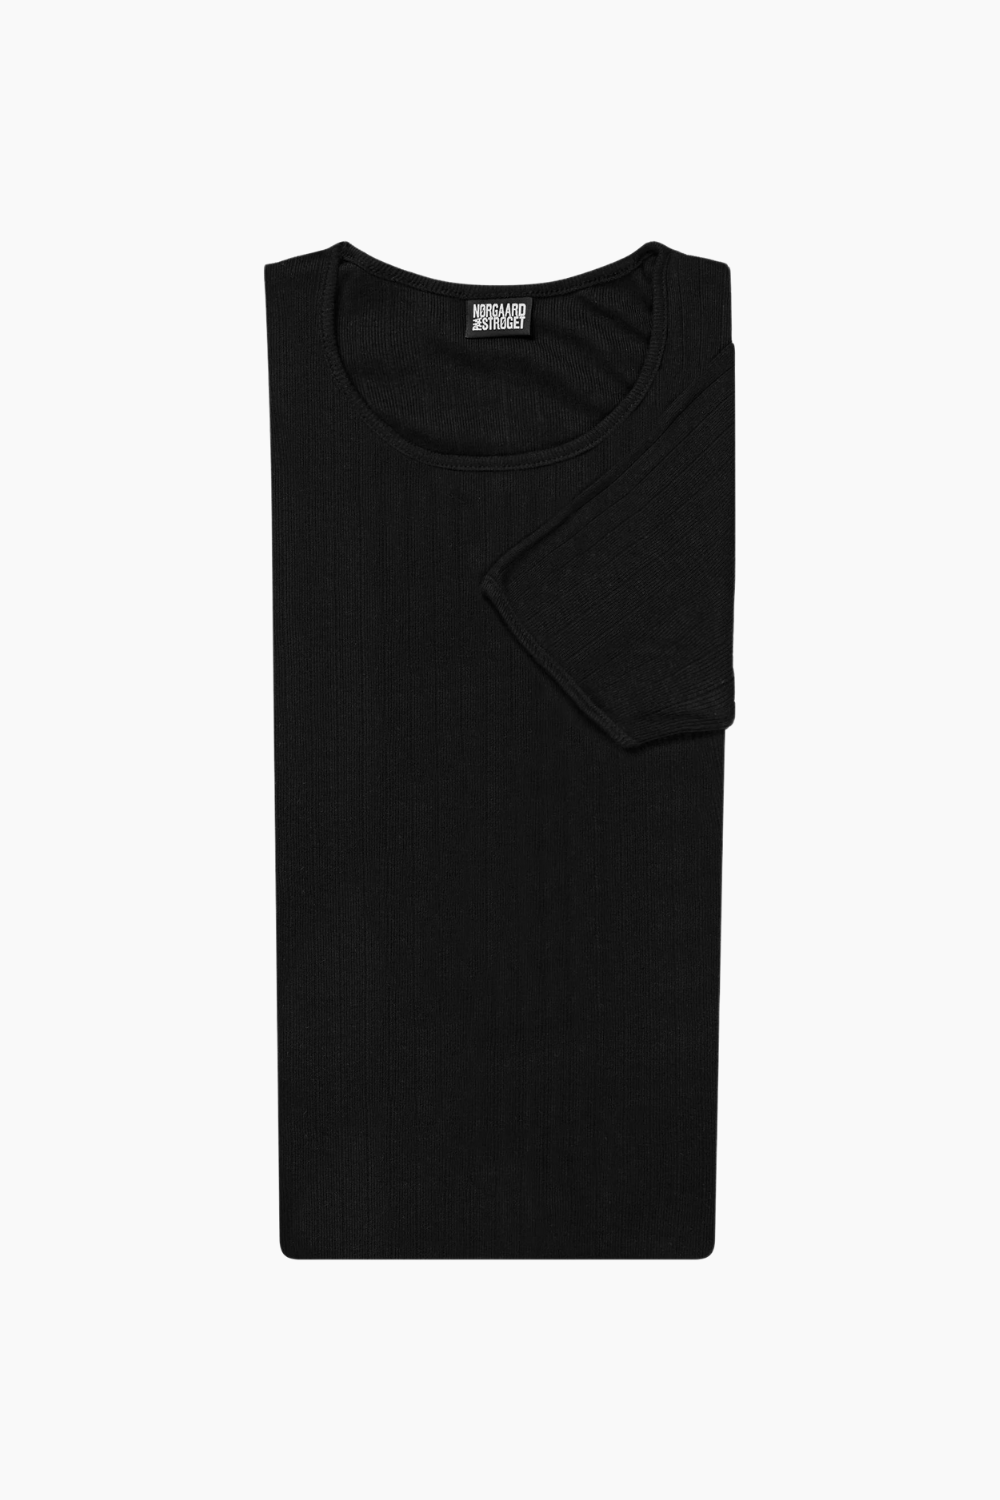 101 Short Sleeve Solid Color - Black - Nørgaard på Strøget